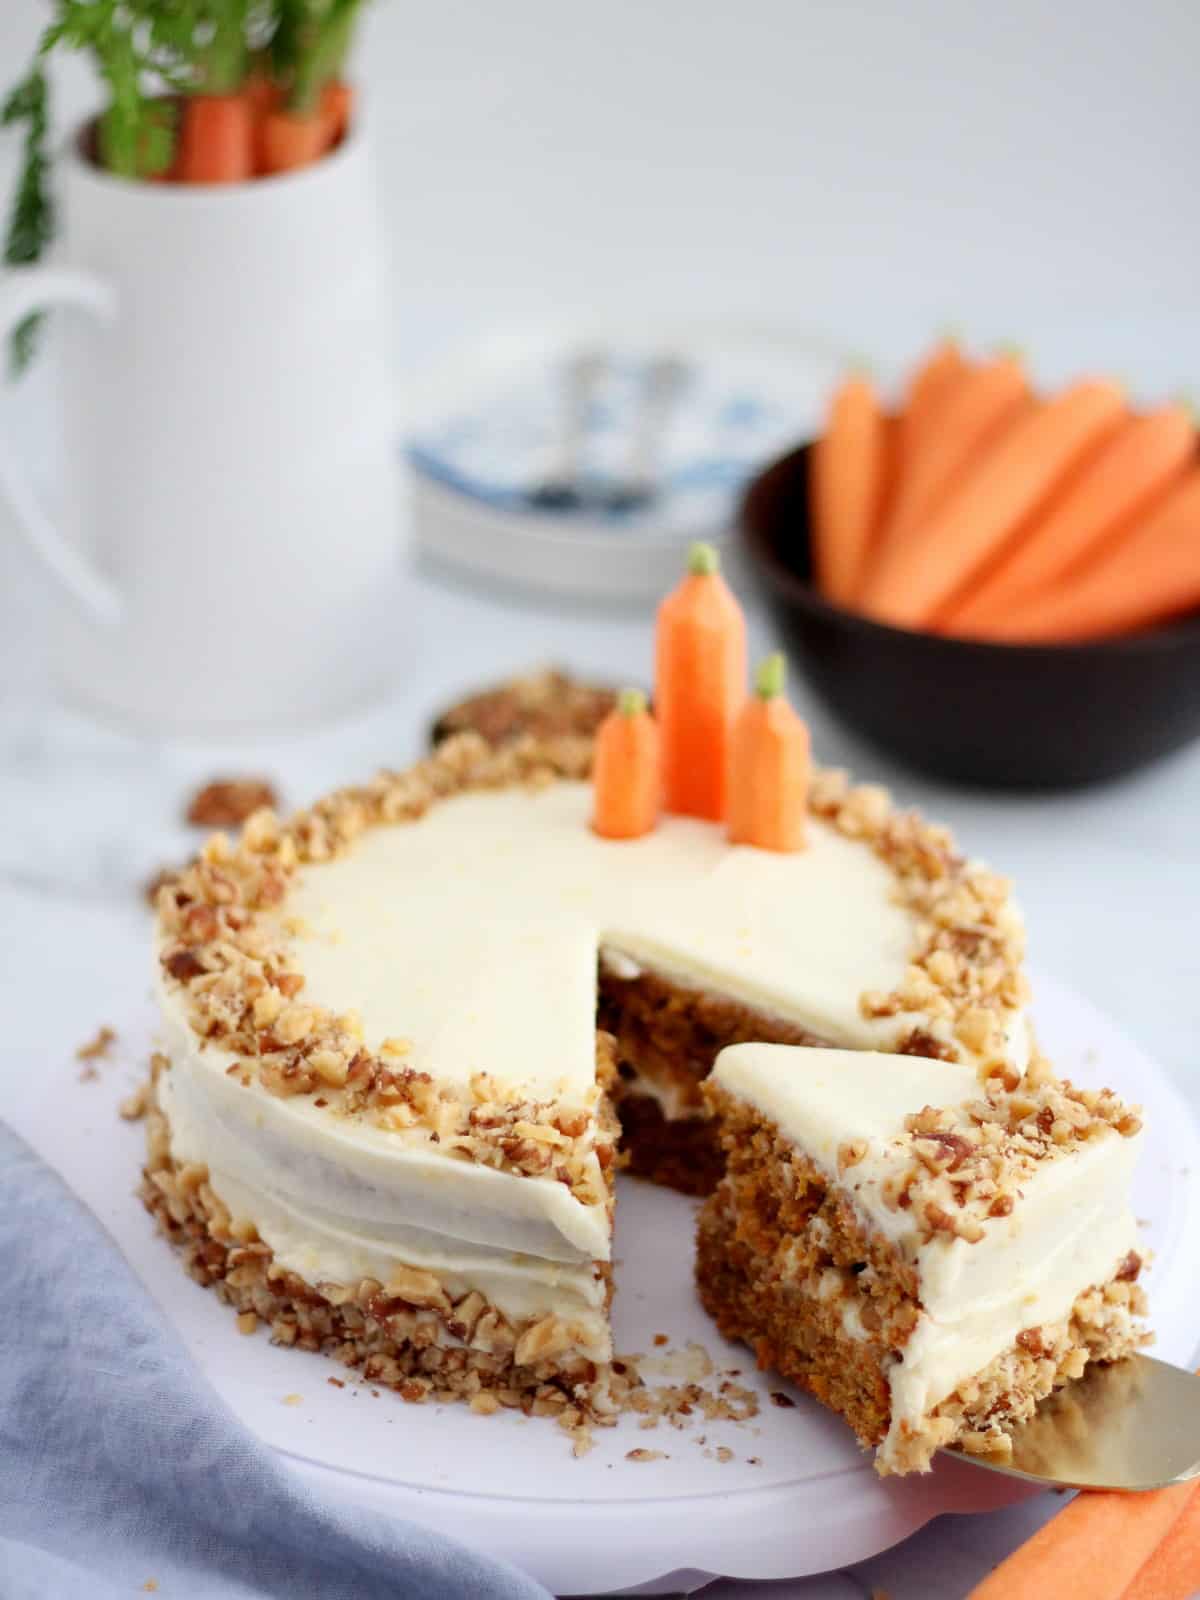 homemade carrot cake on white plate